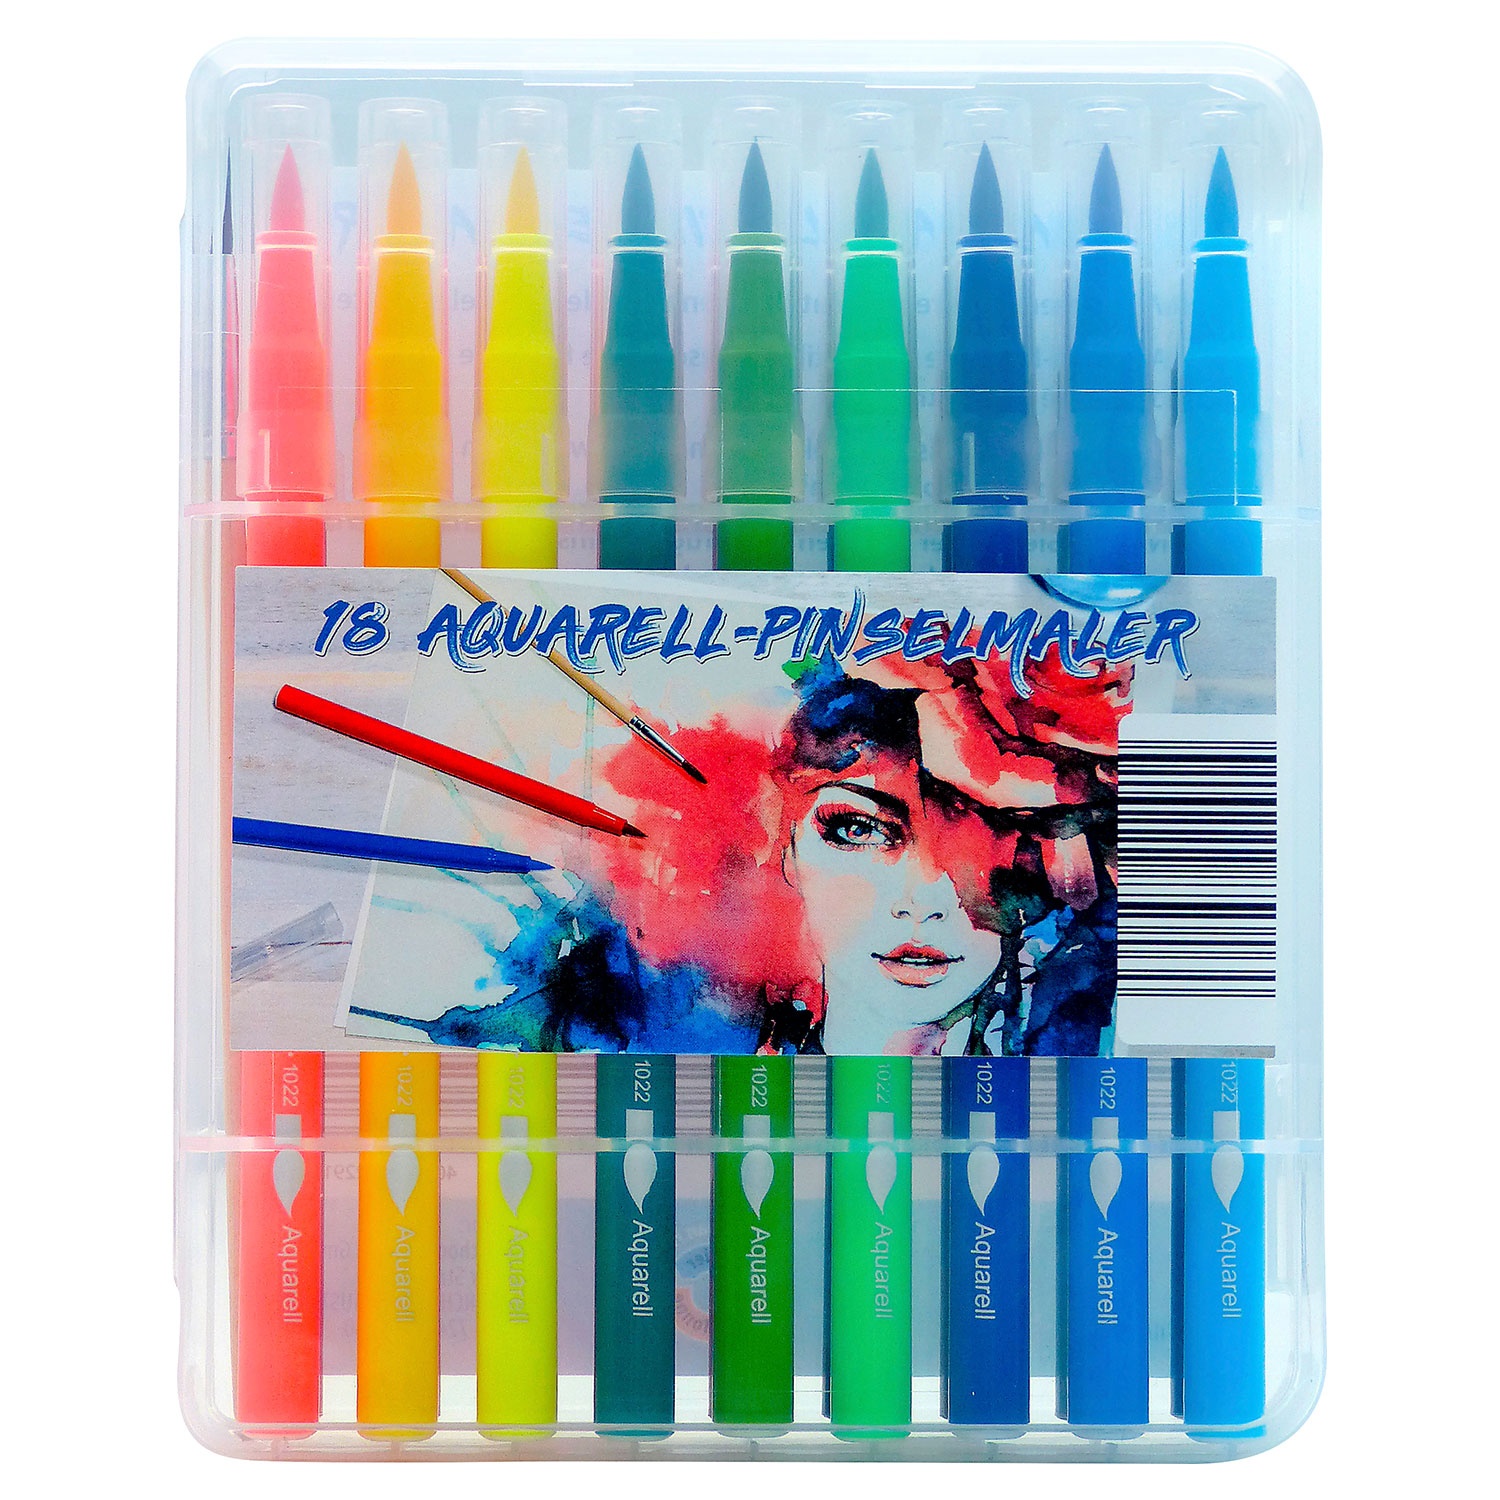 Aquarell-Stifte oder -Pinsel